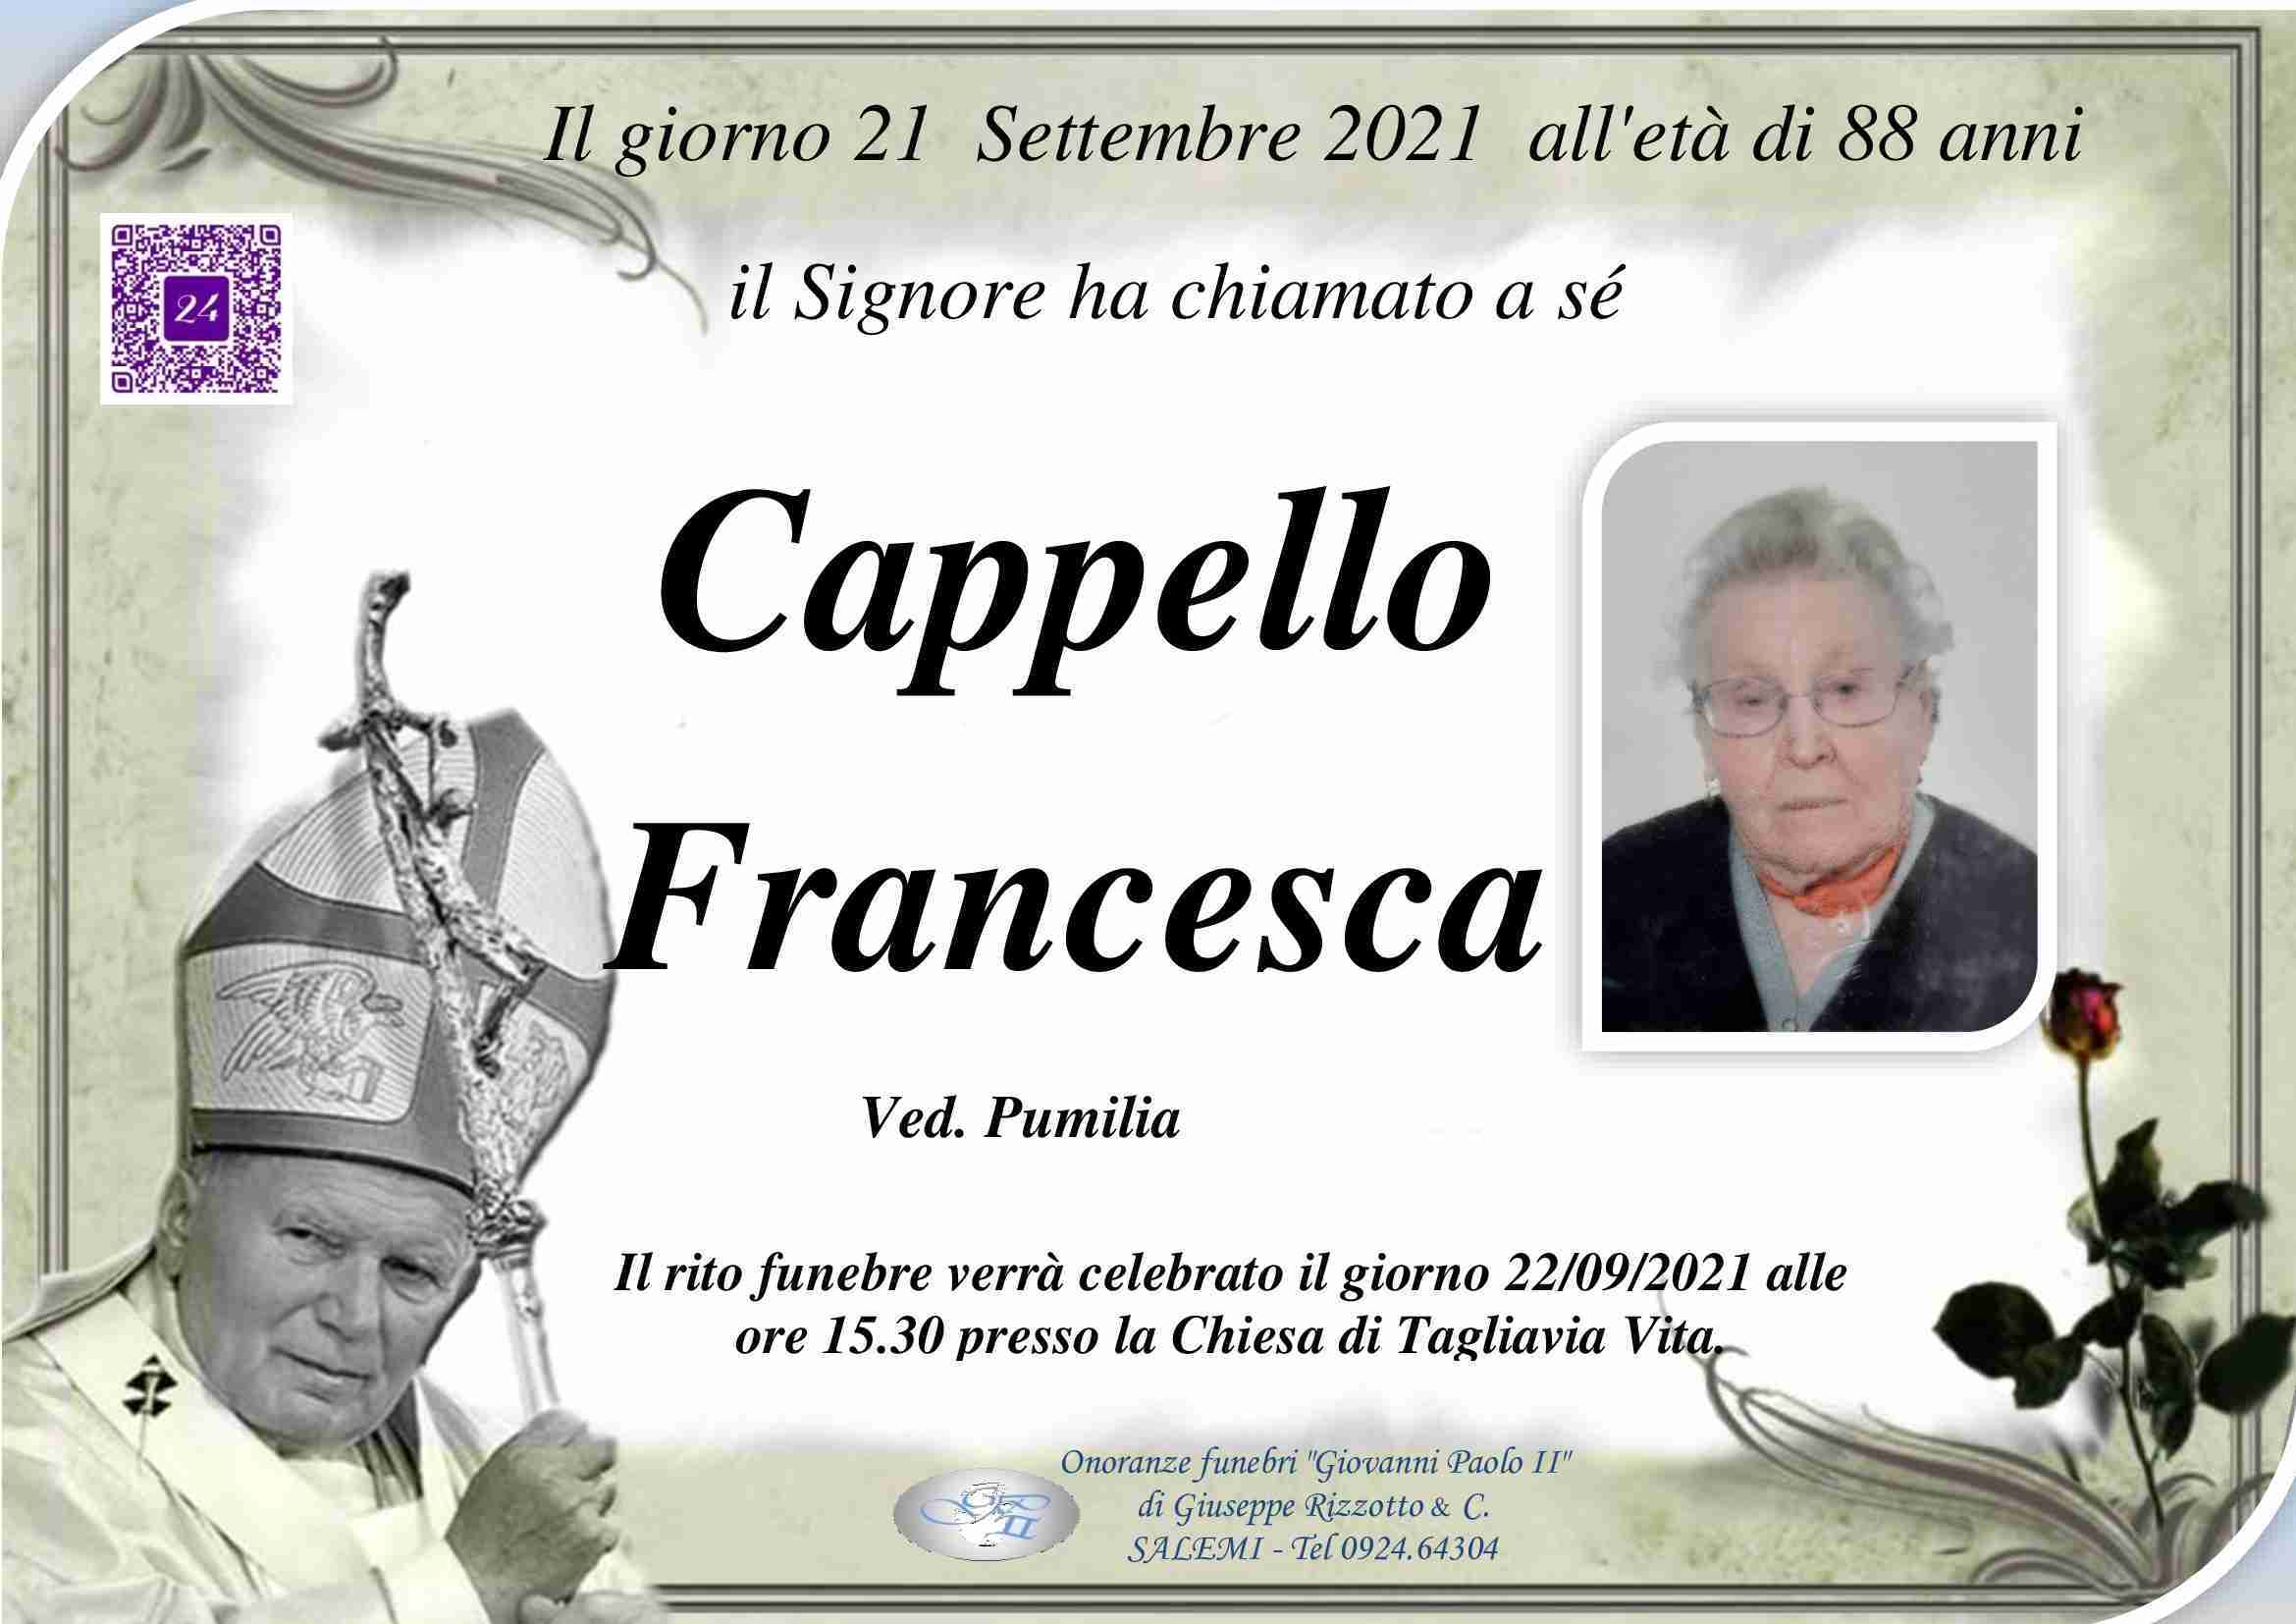 Francesca Cappello